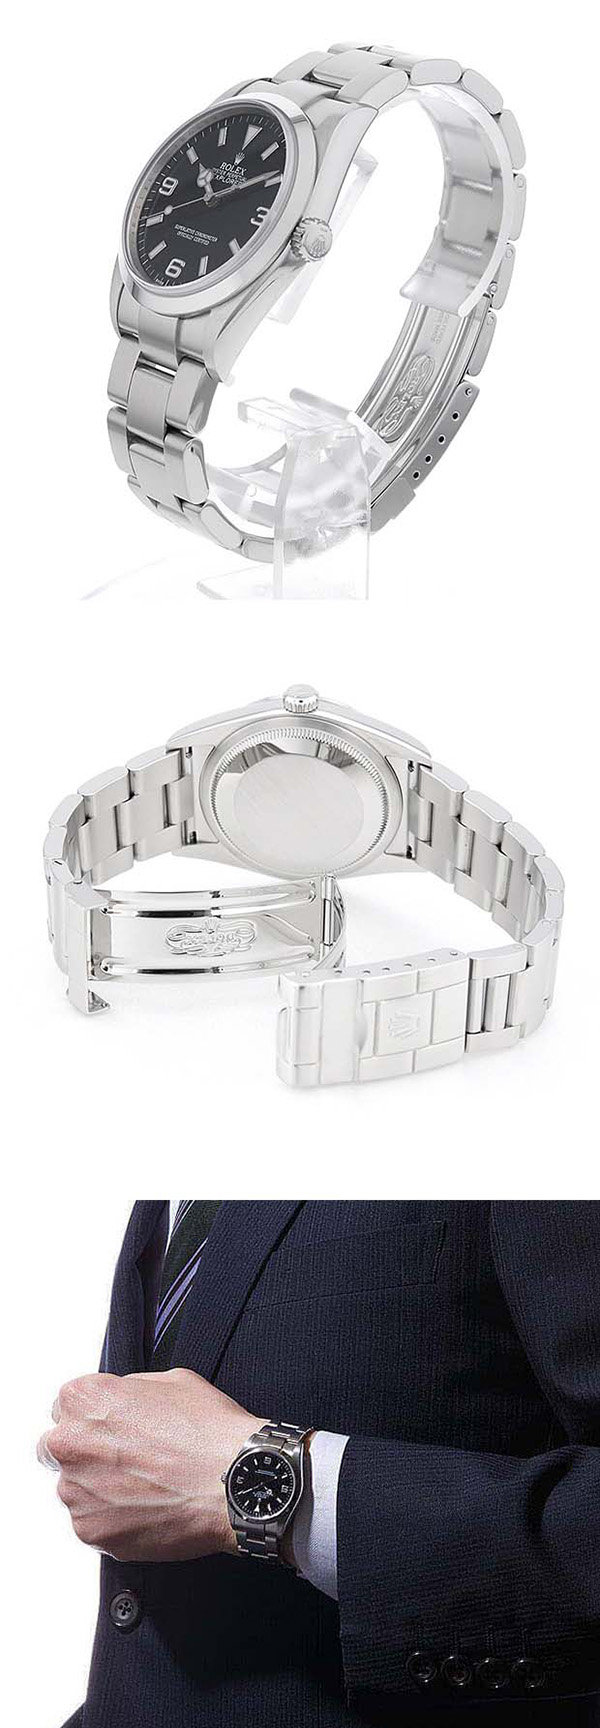 【 父の日ギフト】高級腕時計ブランド ロレックス エクスプローラーコピー 114270、贈り物に最適